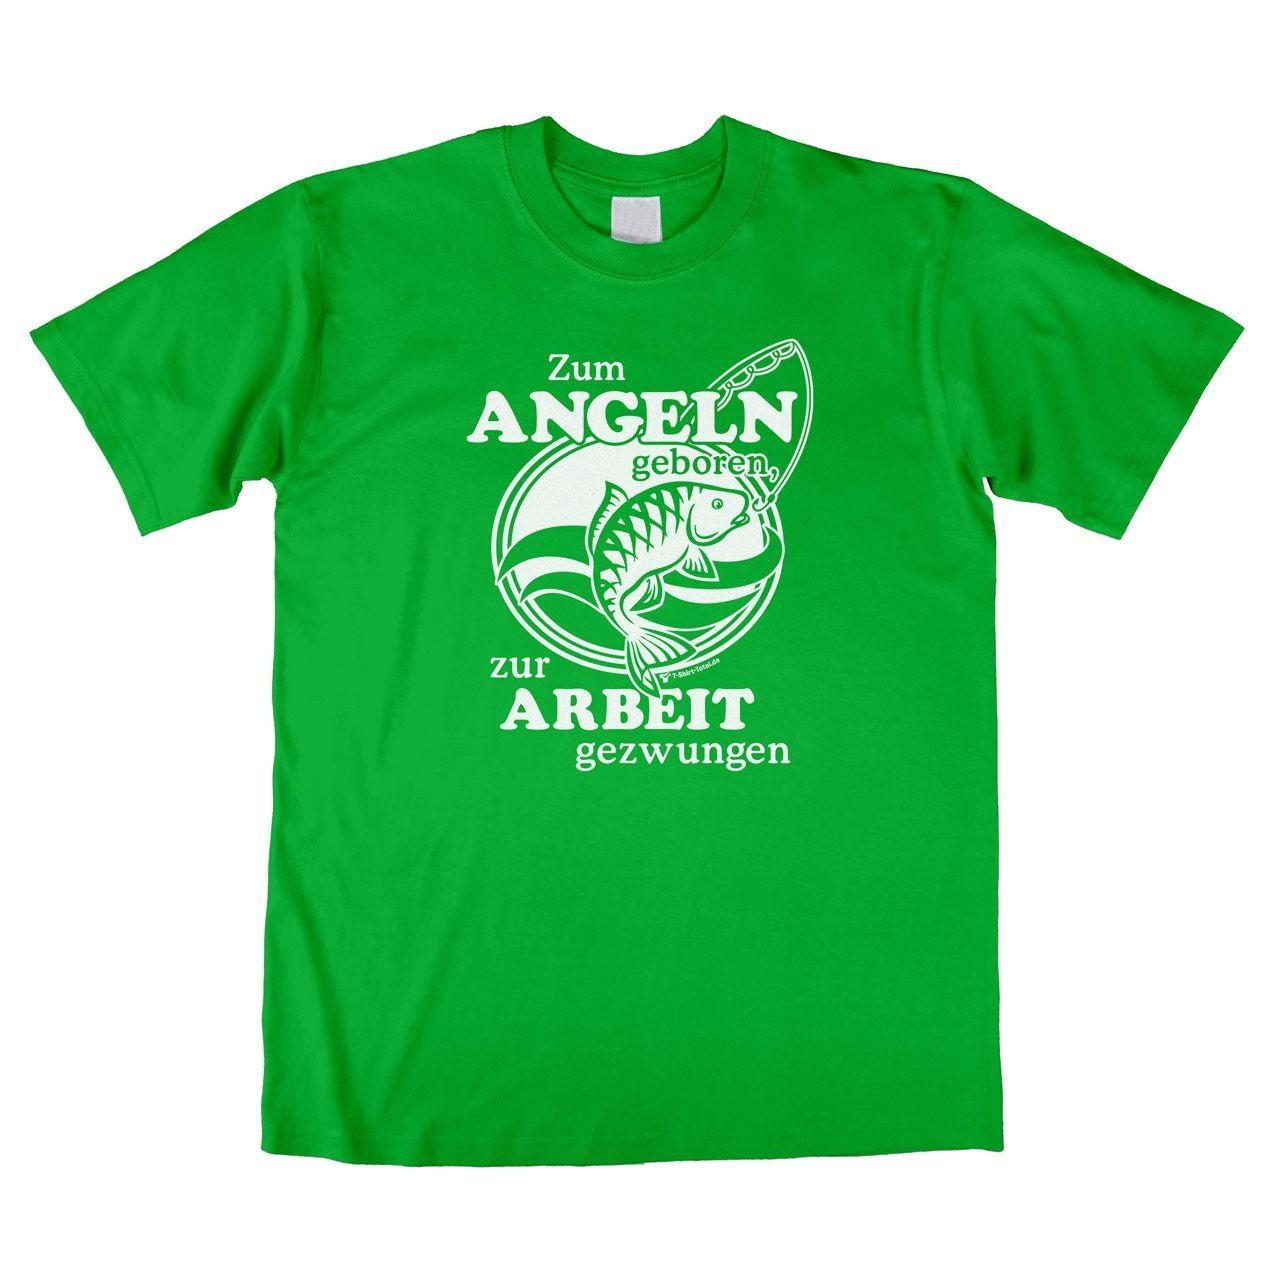 Zum Angeln geboren Unisex T-Shirt grün Large